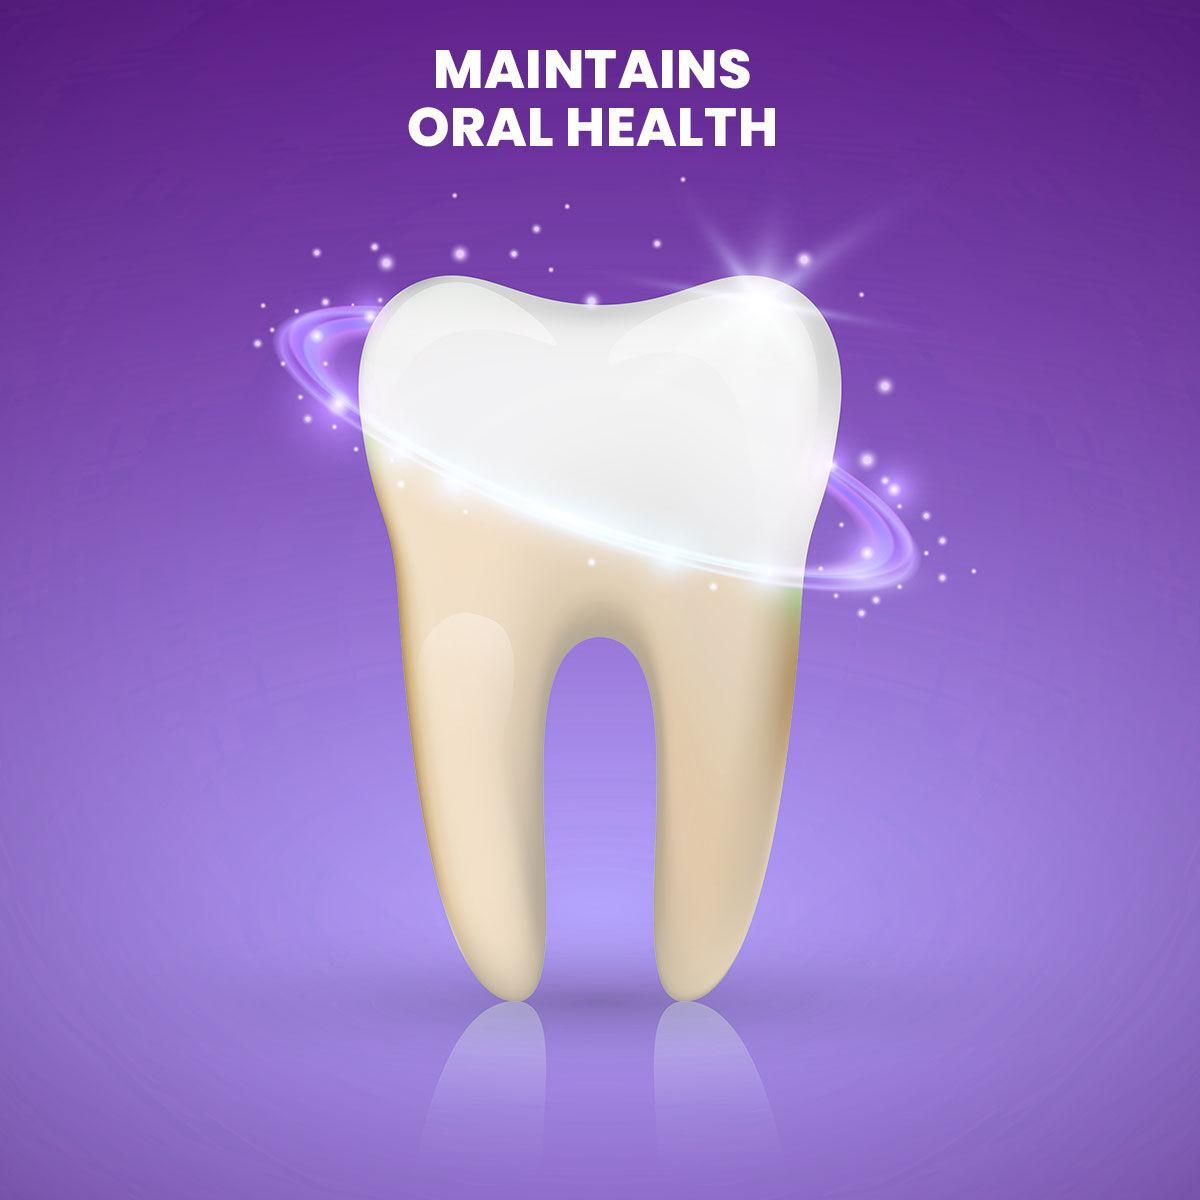 Purple Teeth Whitening Gel